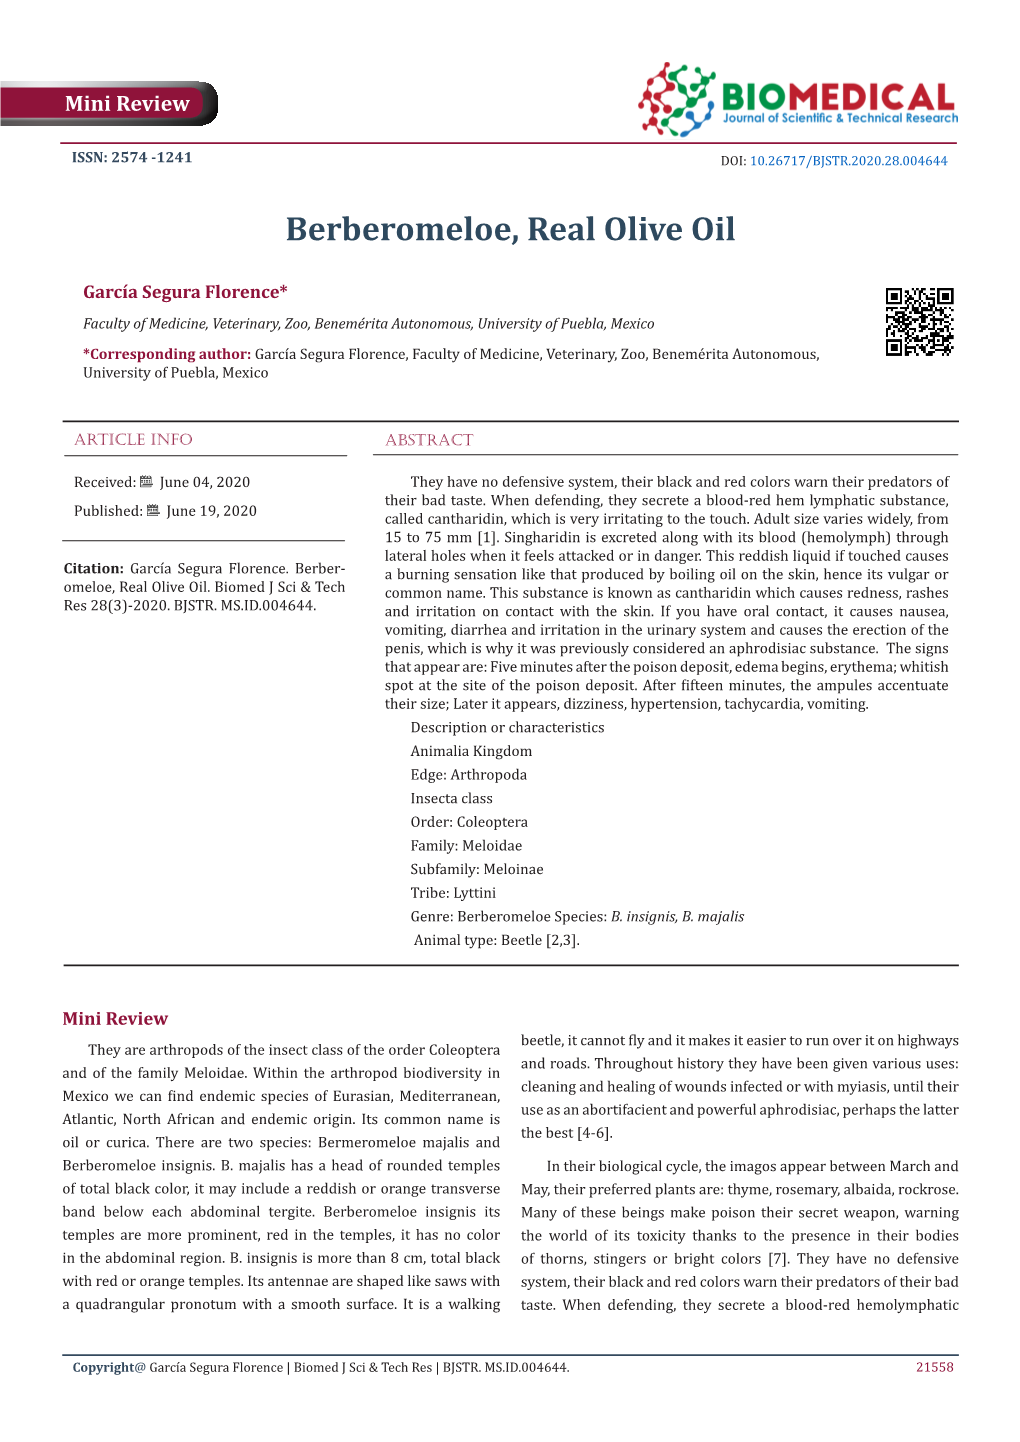 Berberomeloe, Real Olive Oil